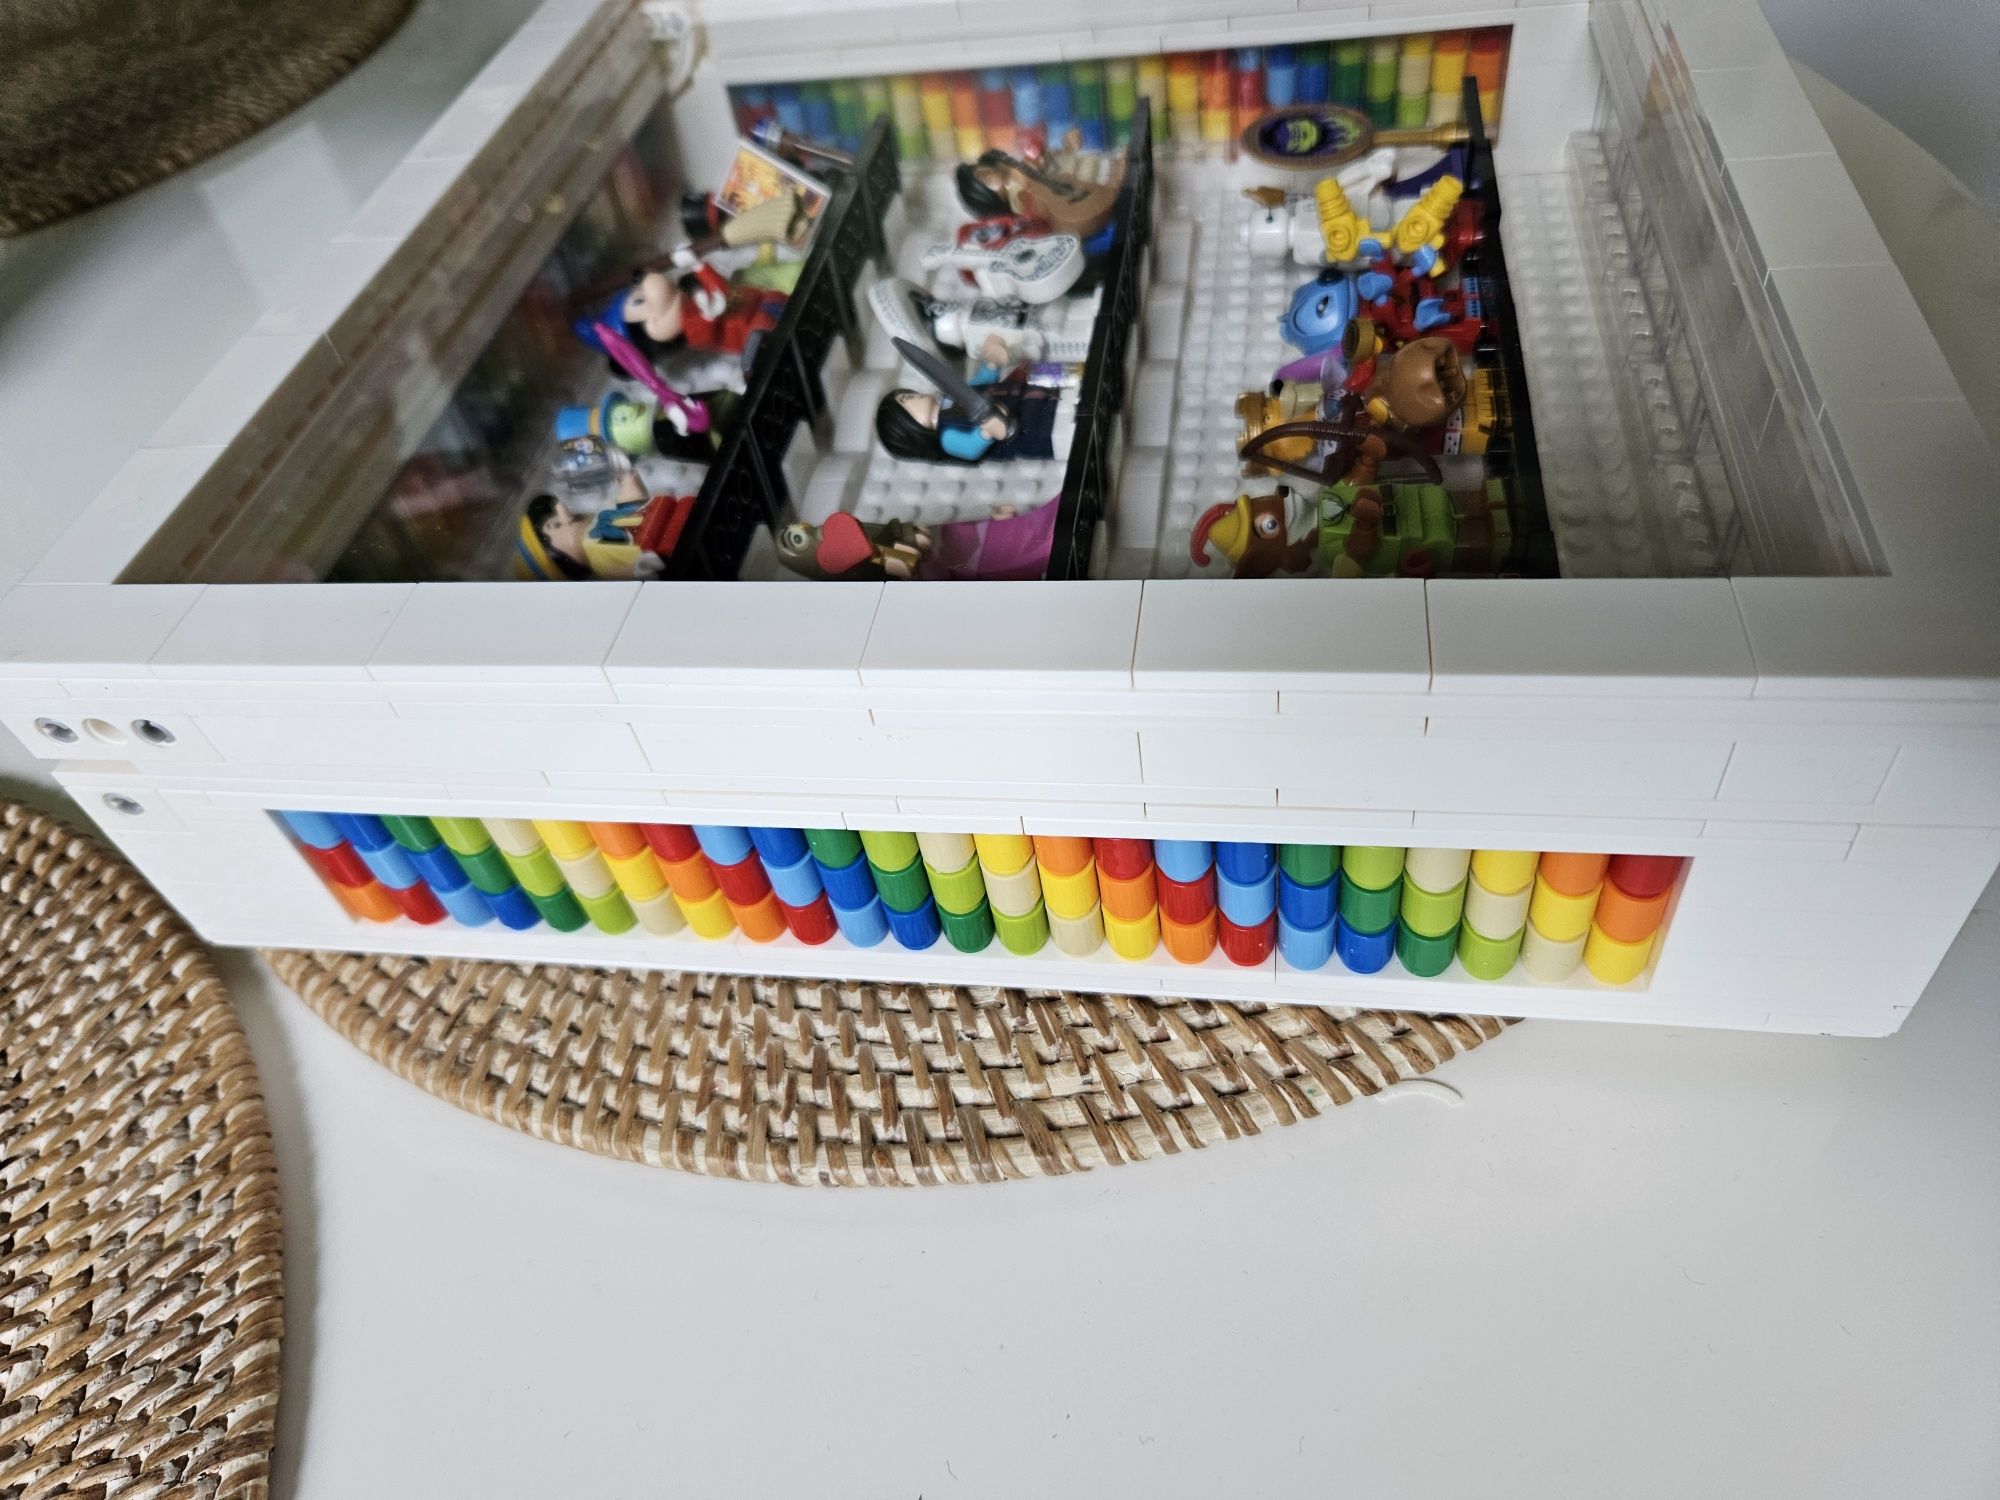 Cutie expunere colecții Lego